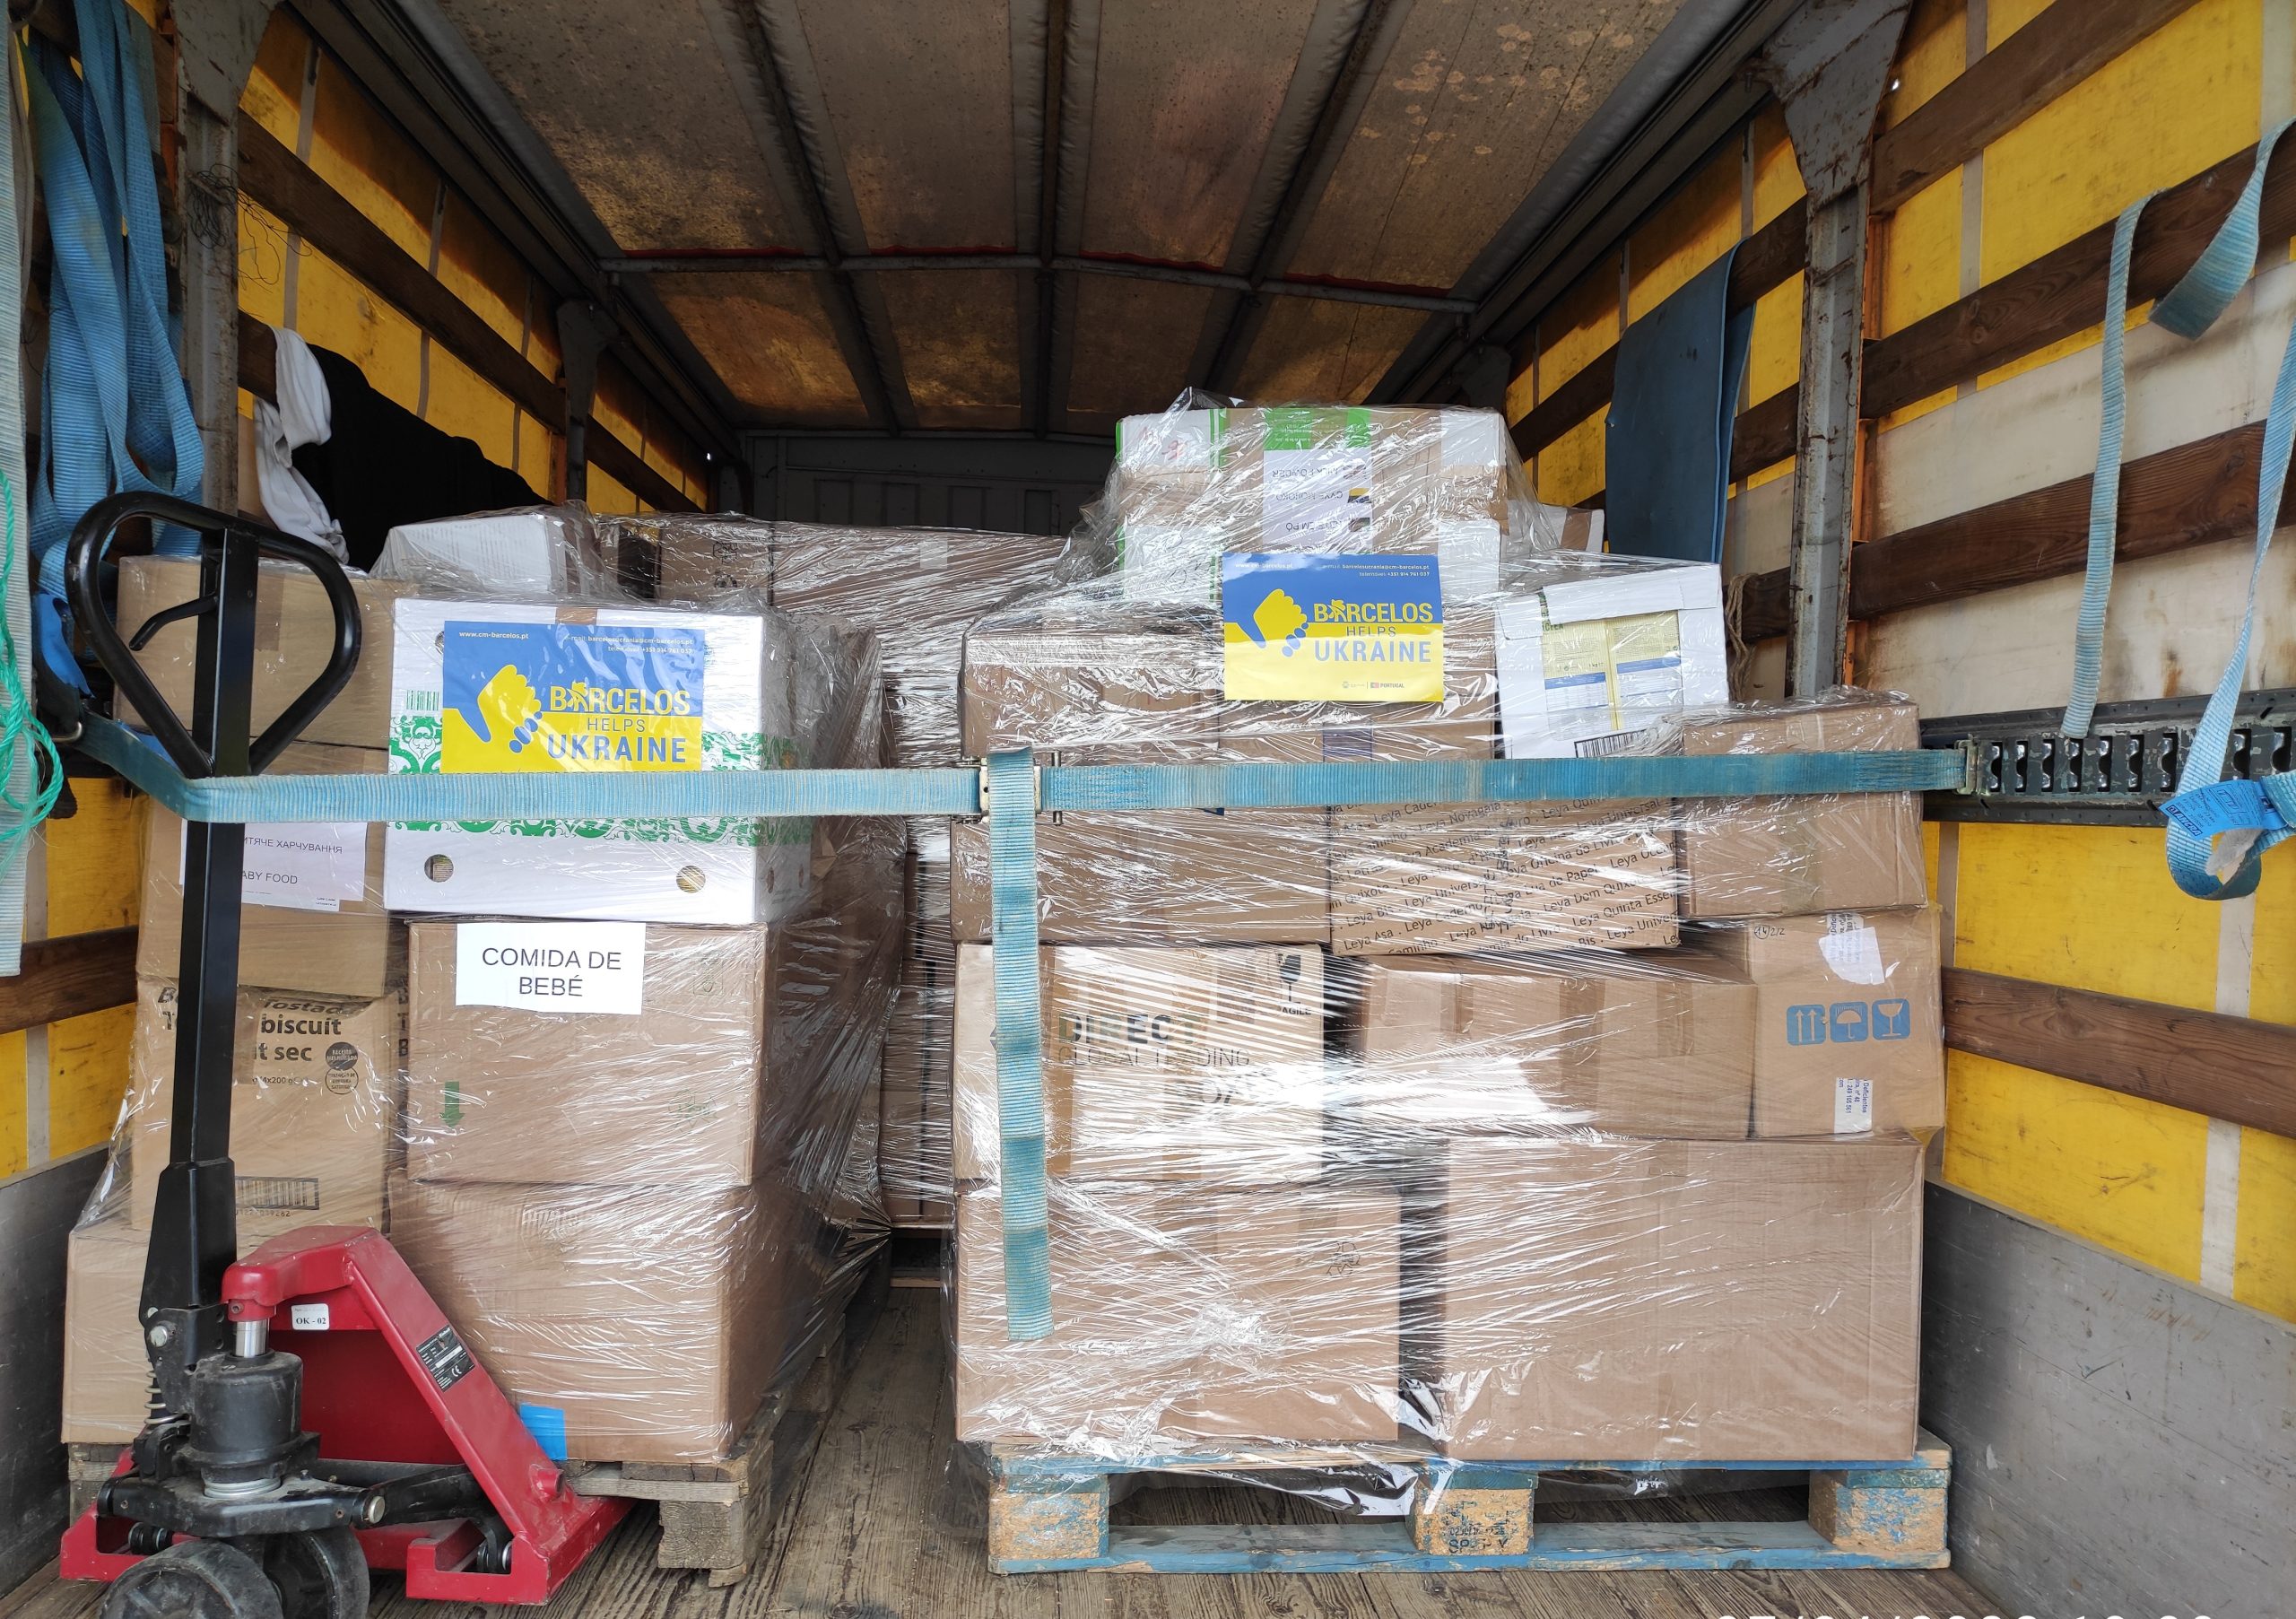 Camião com ajuda humanitária partiu hoje para a Ucrânia